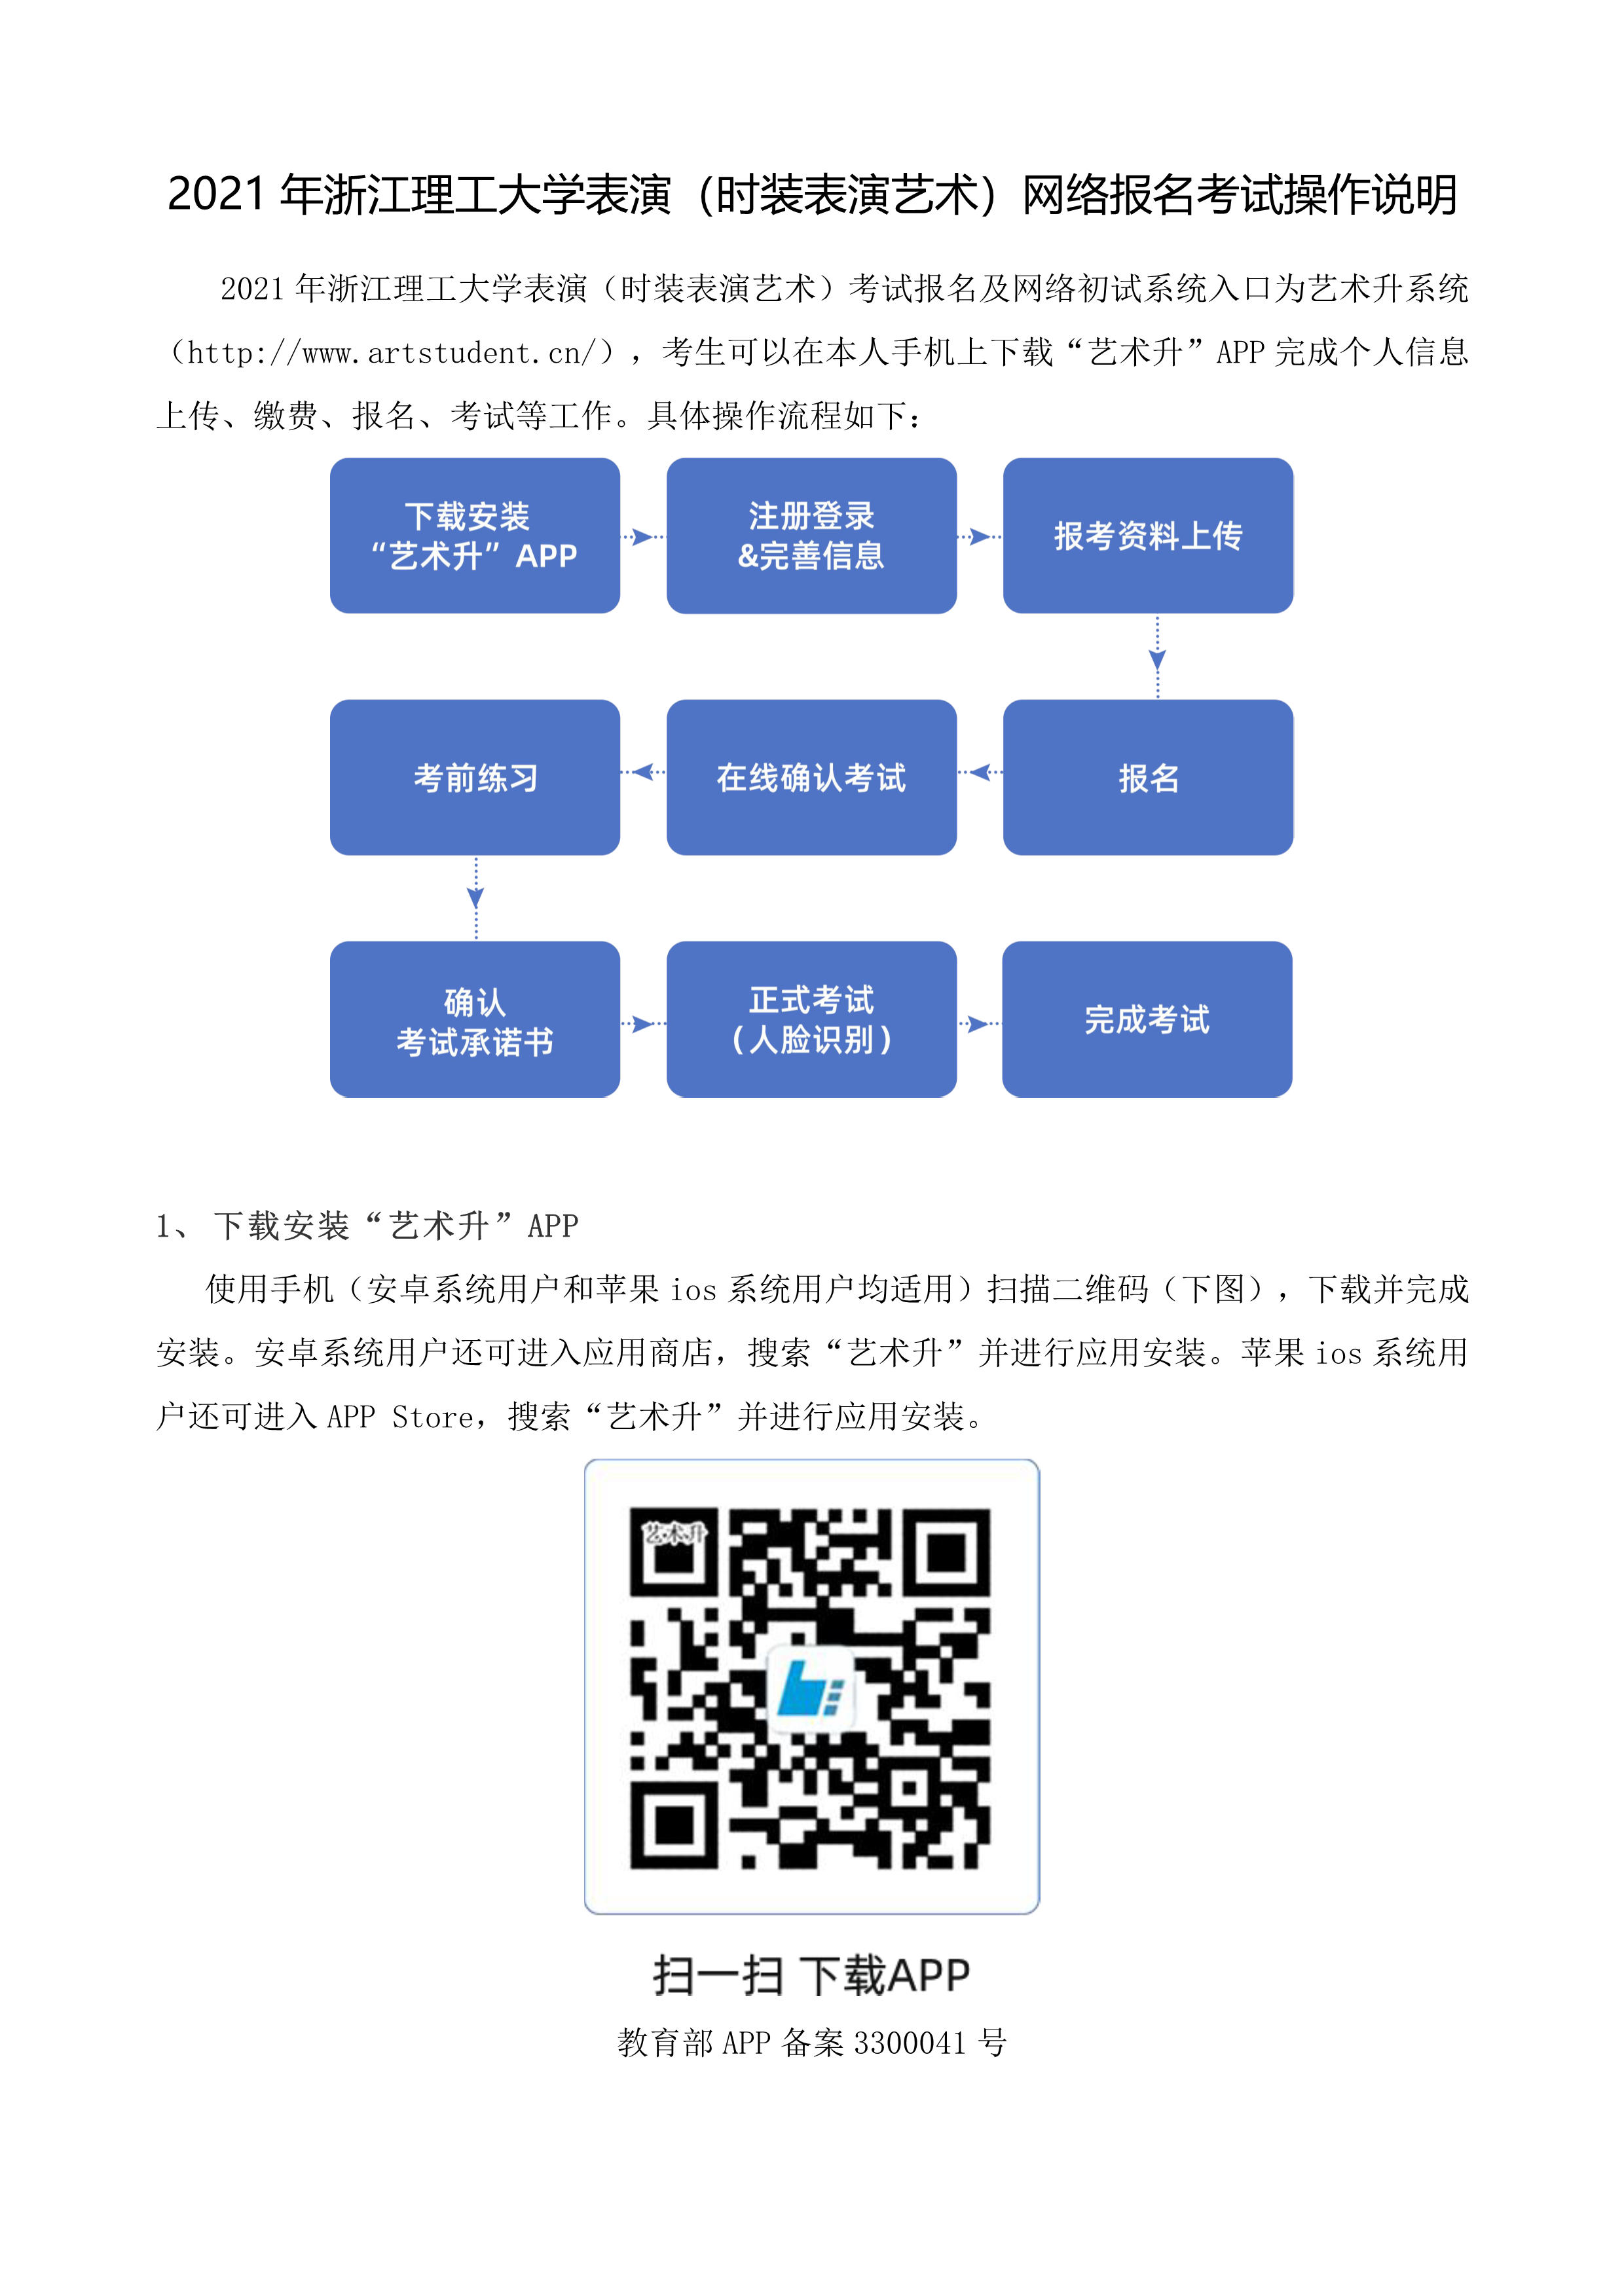 2021年浙江理工大学表演（时装表演艺术）网络报名考试操作说明_1.png